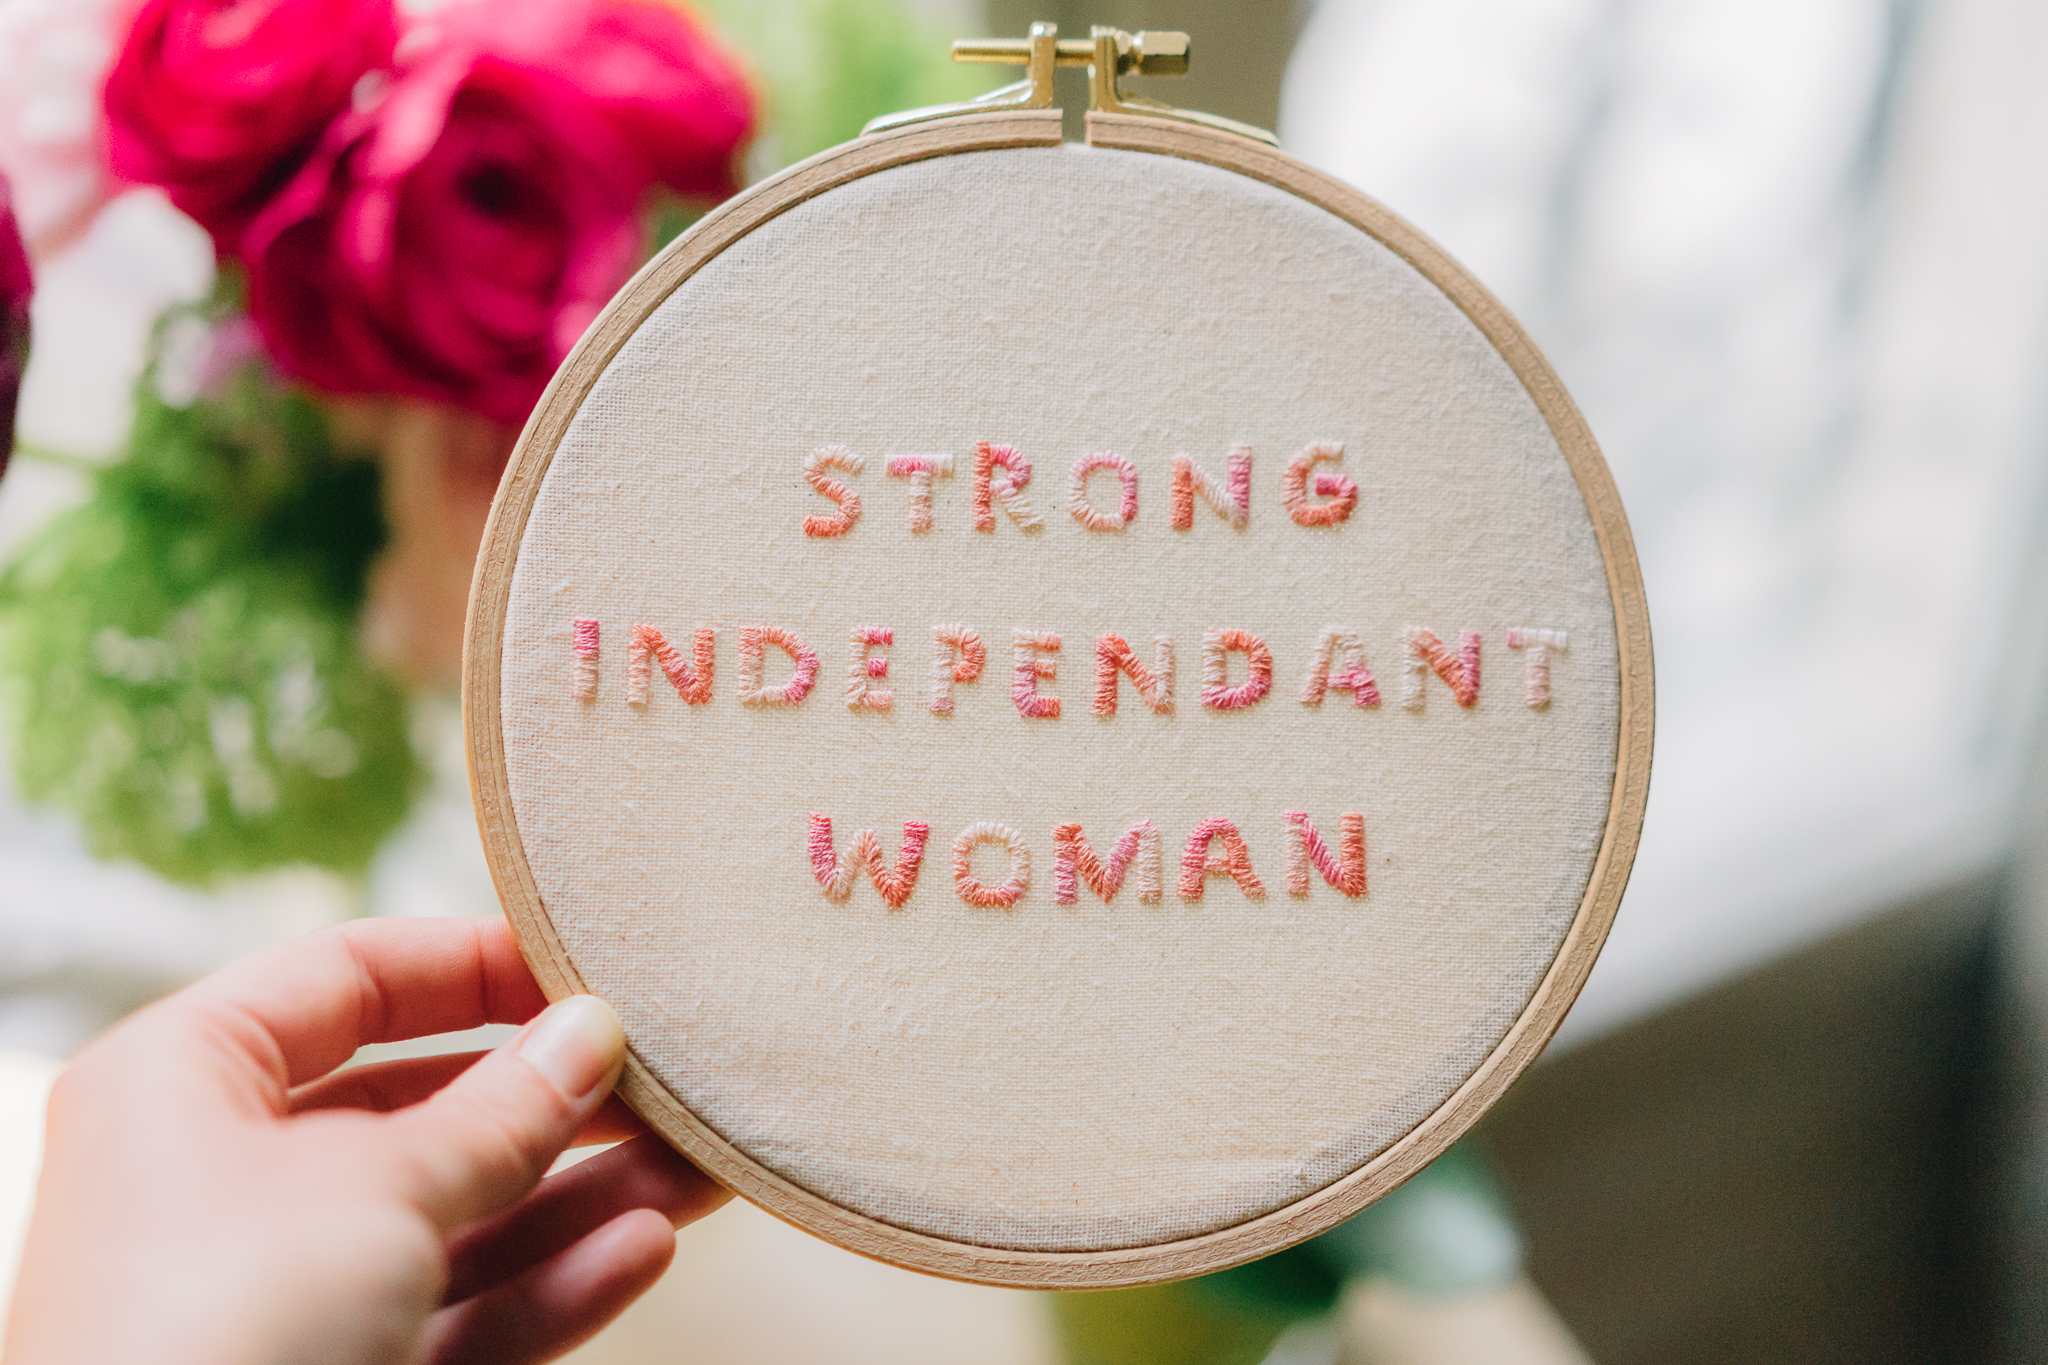 Strong, Independent Woman : broderie pour la Journée Internationale des Droits de la Femme